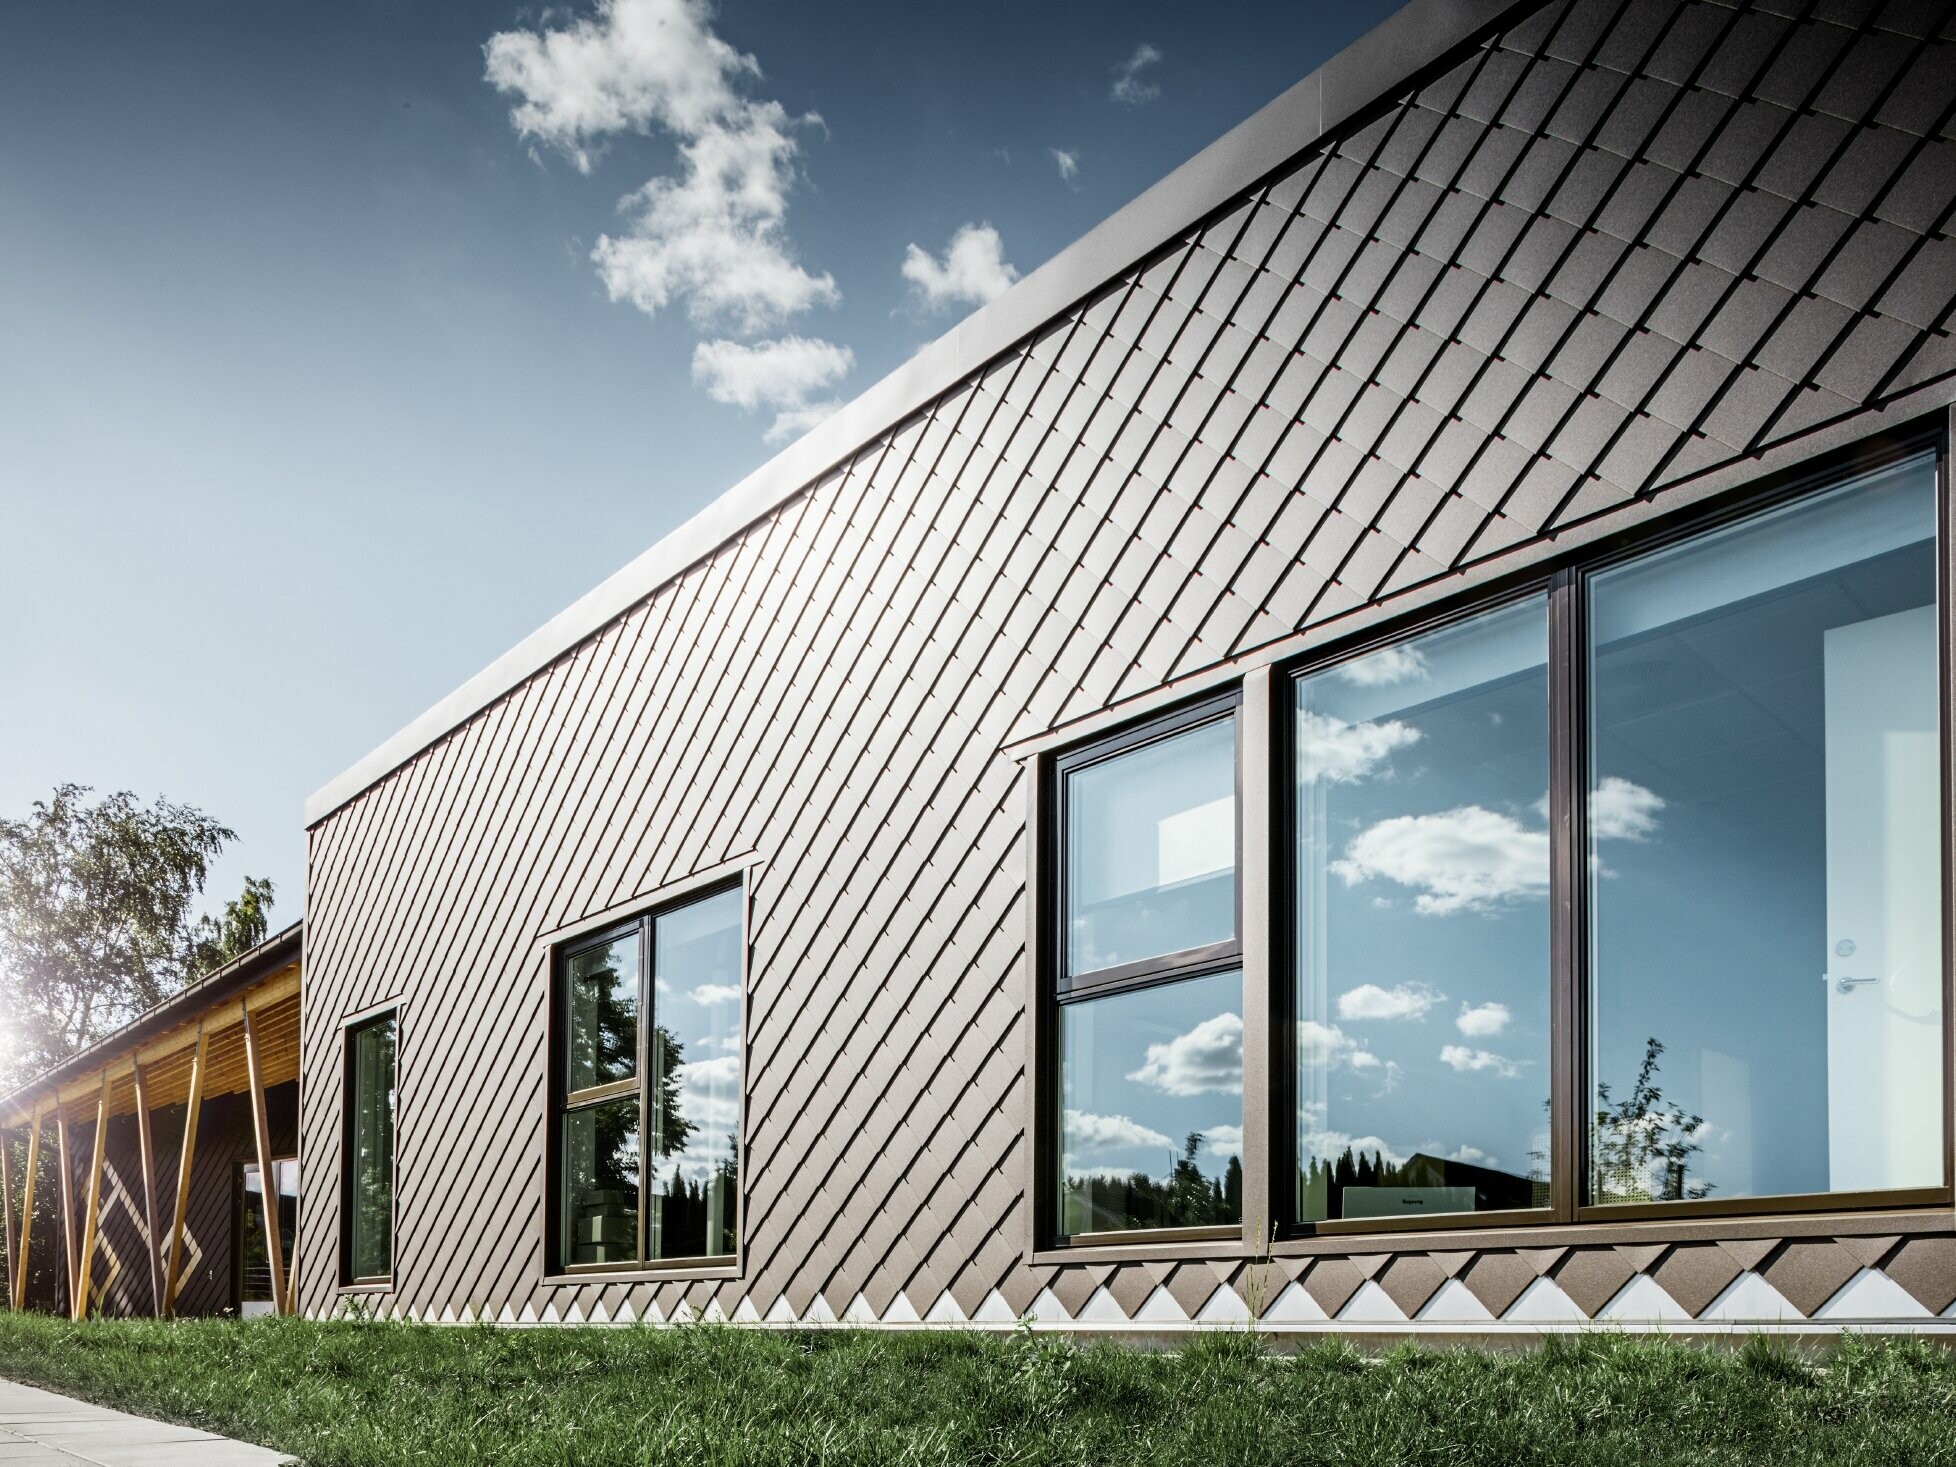 To zdjęcie przedszkola w Sztokholmie przedstawia nową elewację z dużymi powierzchniami okiennymi i dachem płaskim. Elewacja została obłożona rombem fasadowym 20 × 20 w kolorze brązowym.